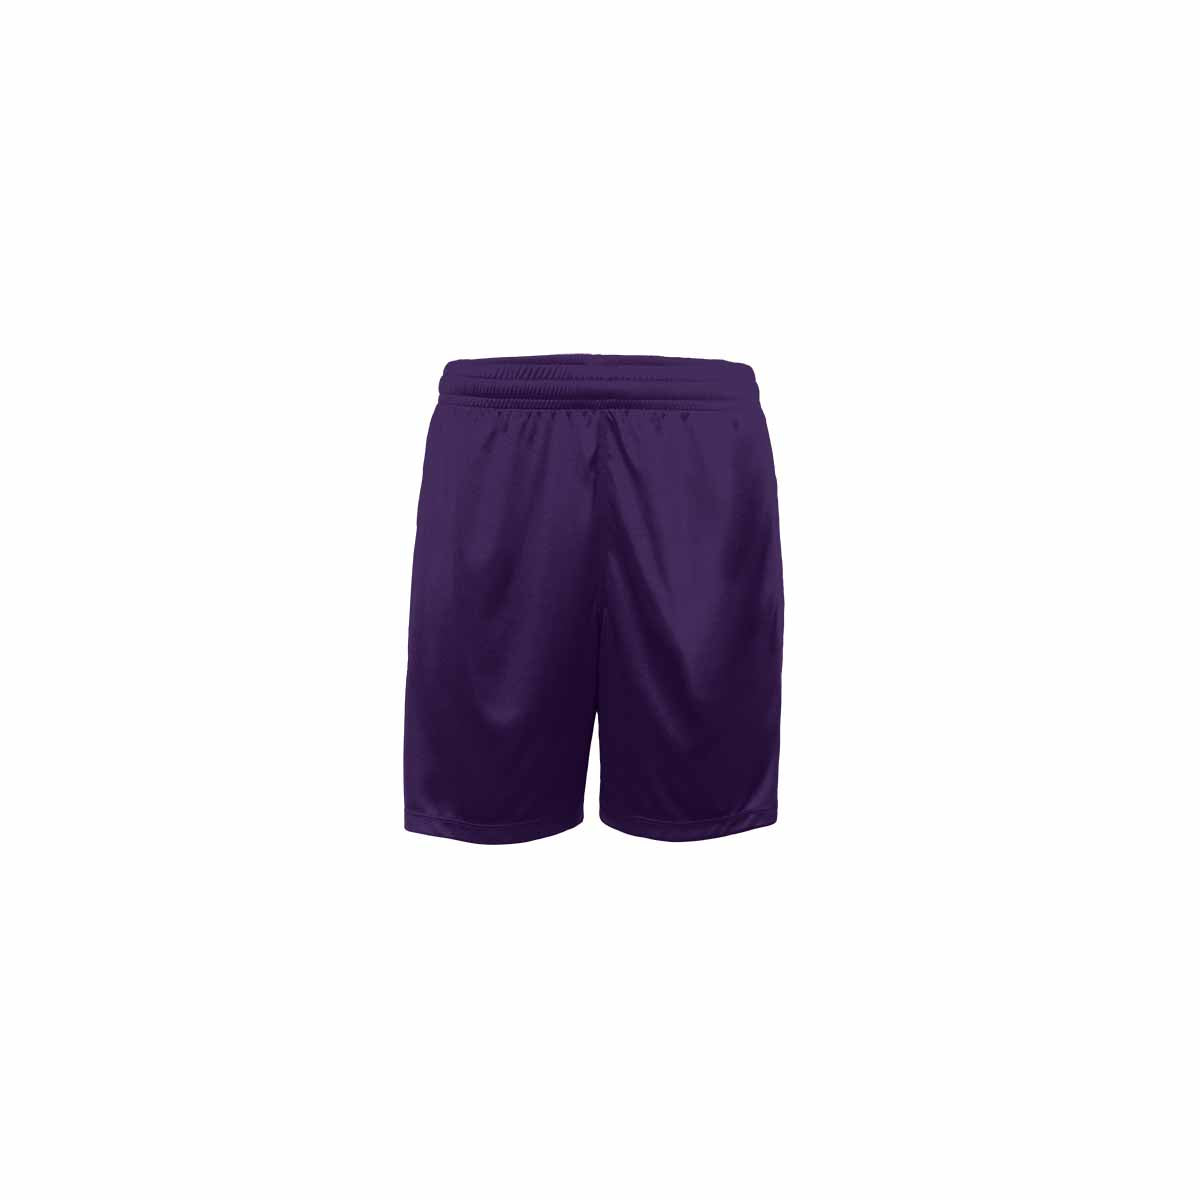 Pantalón Kappa Gondo - violeta - 